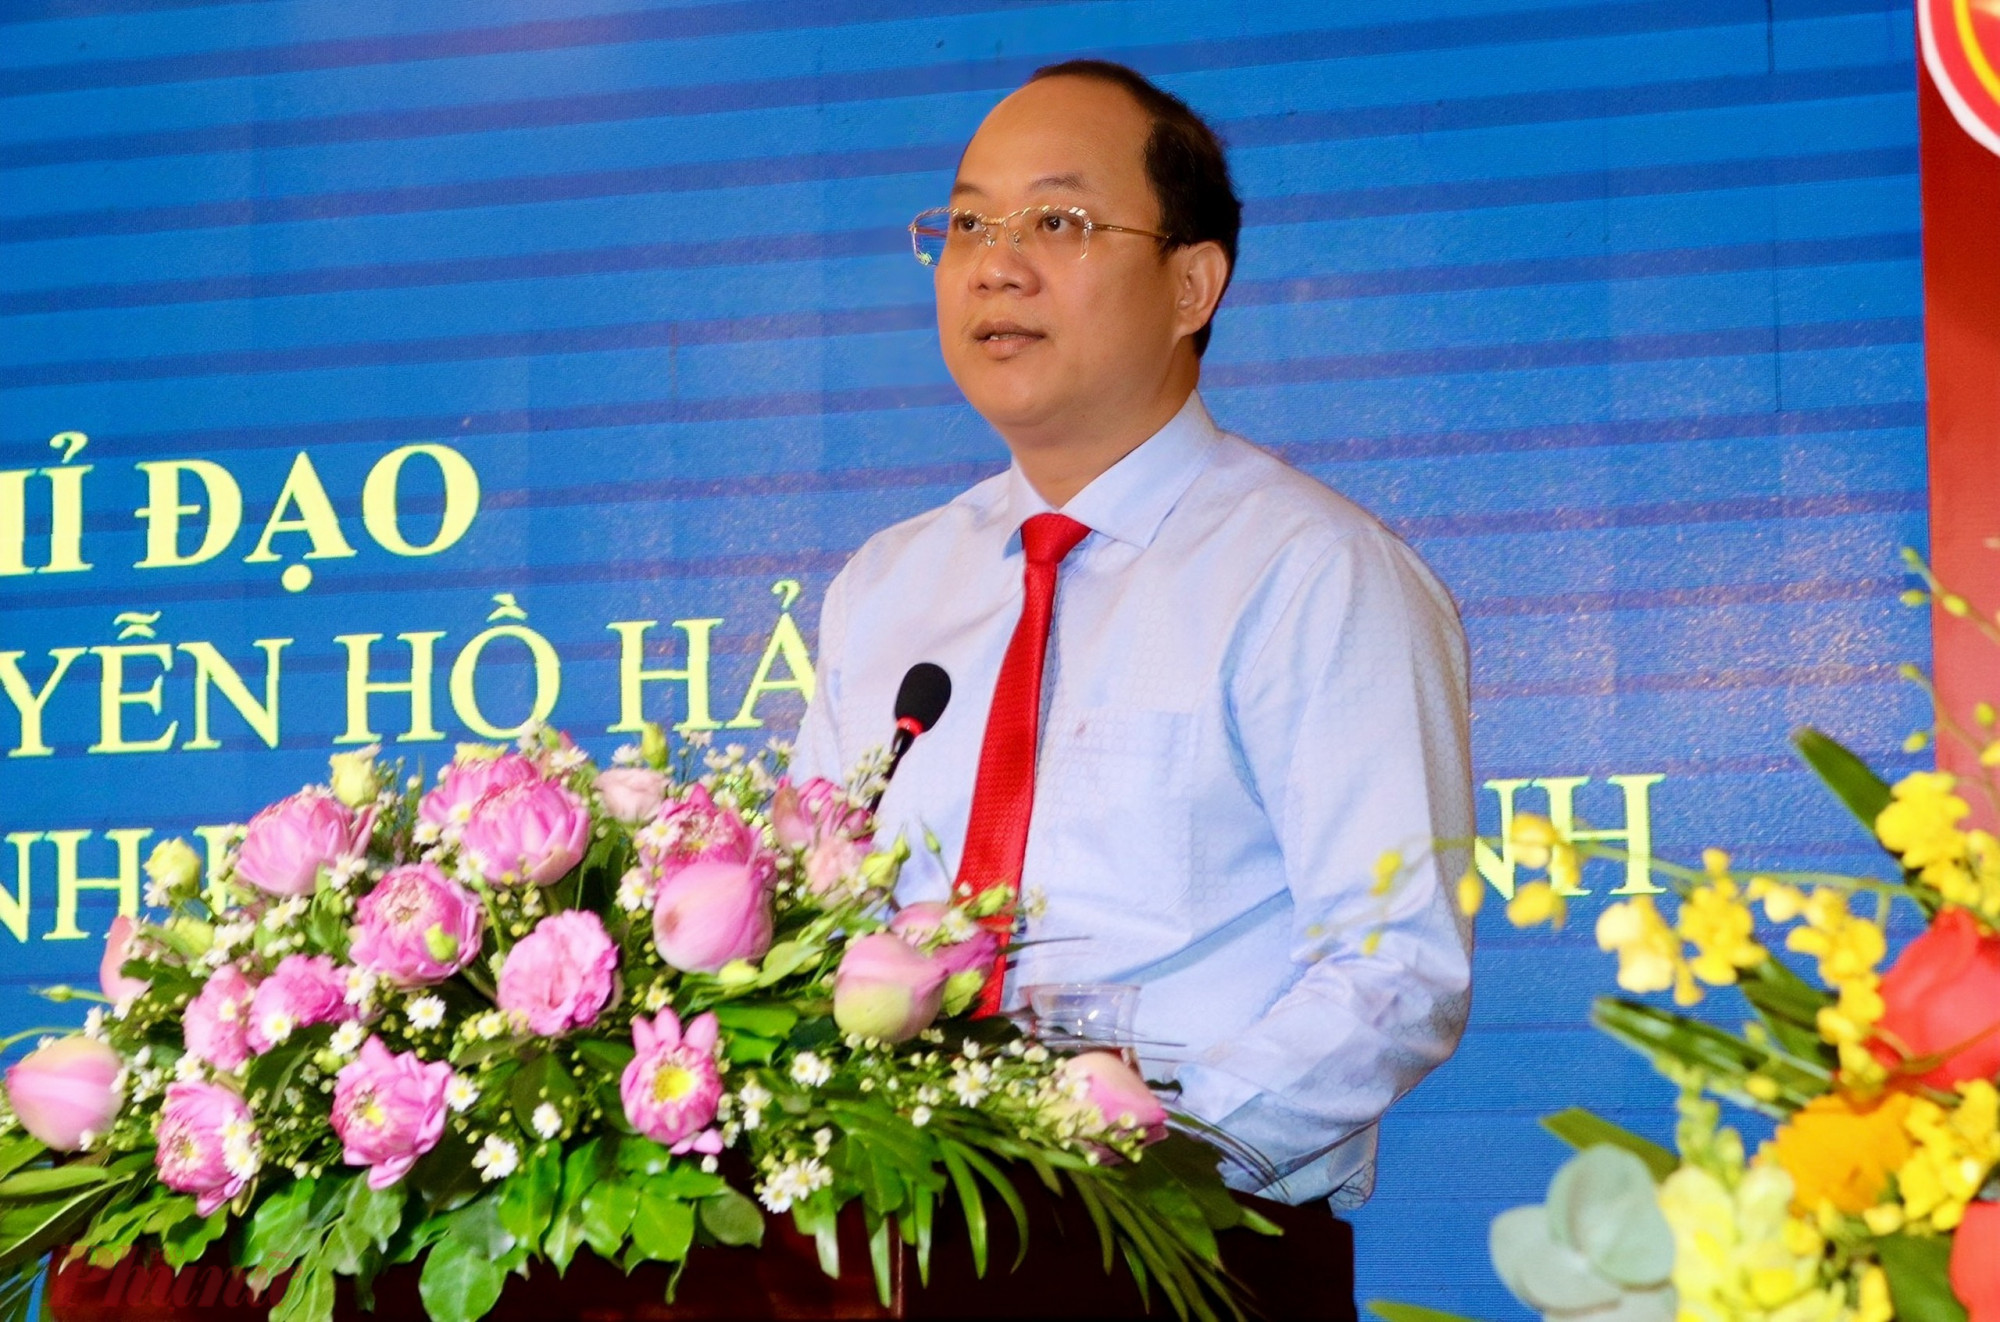 Ông Nguyễn Hồ Hải, Phó Bí thư Thành ủy TPHCM phát biểu chị đạo tại hội nghị